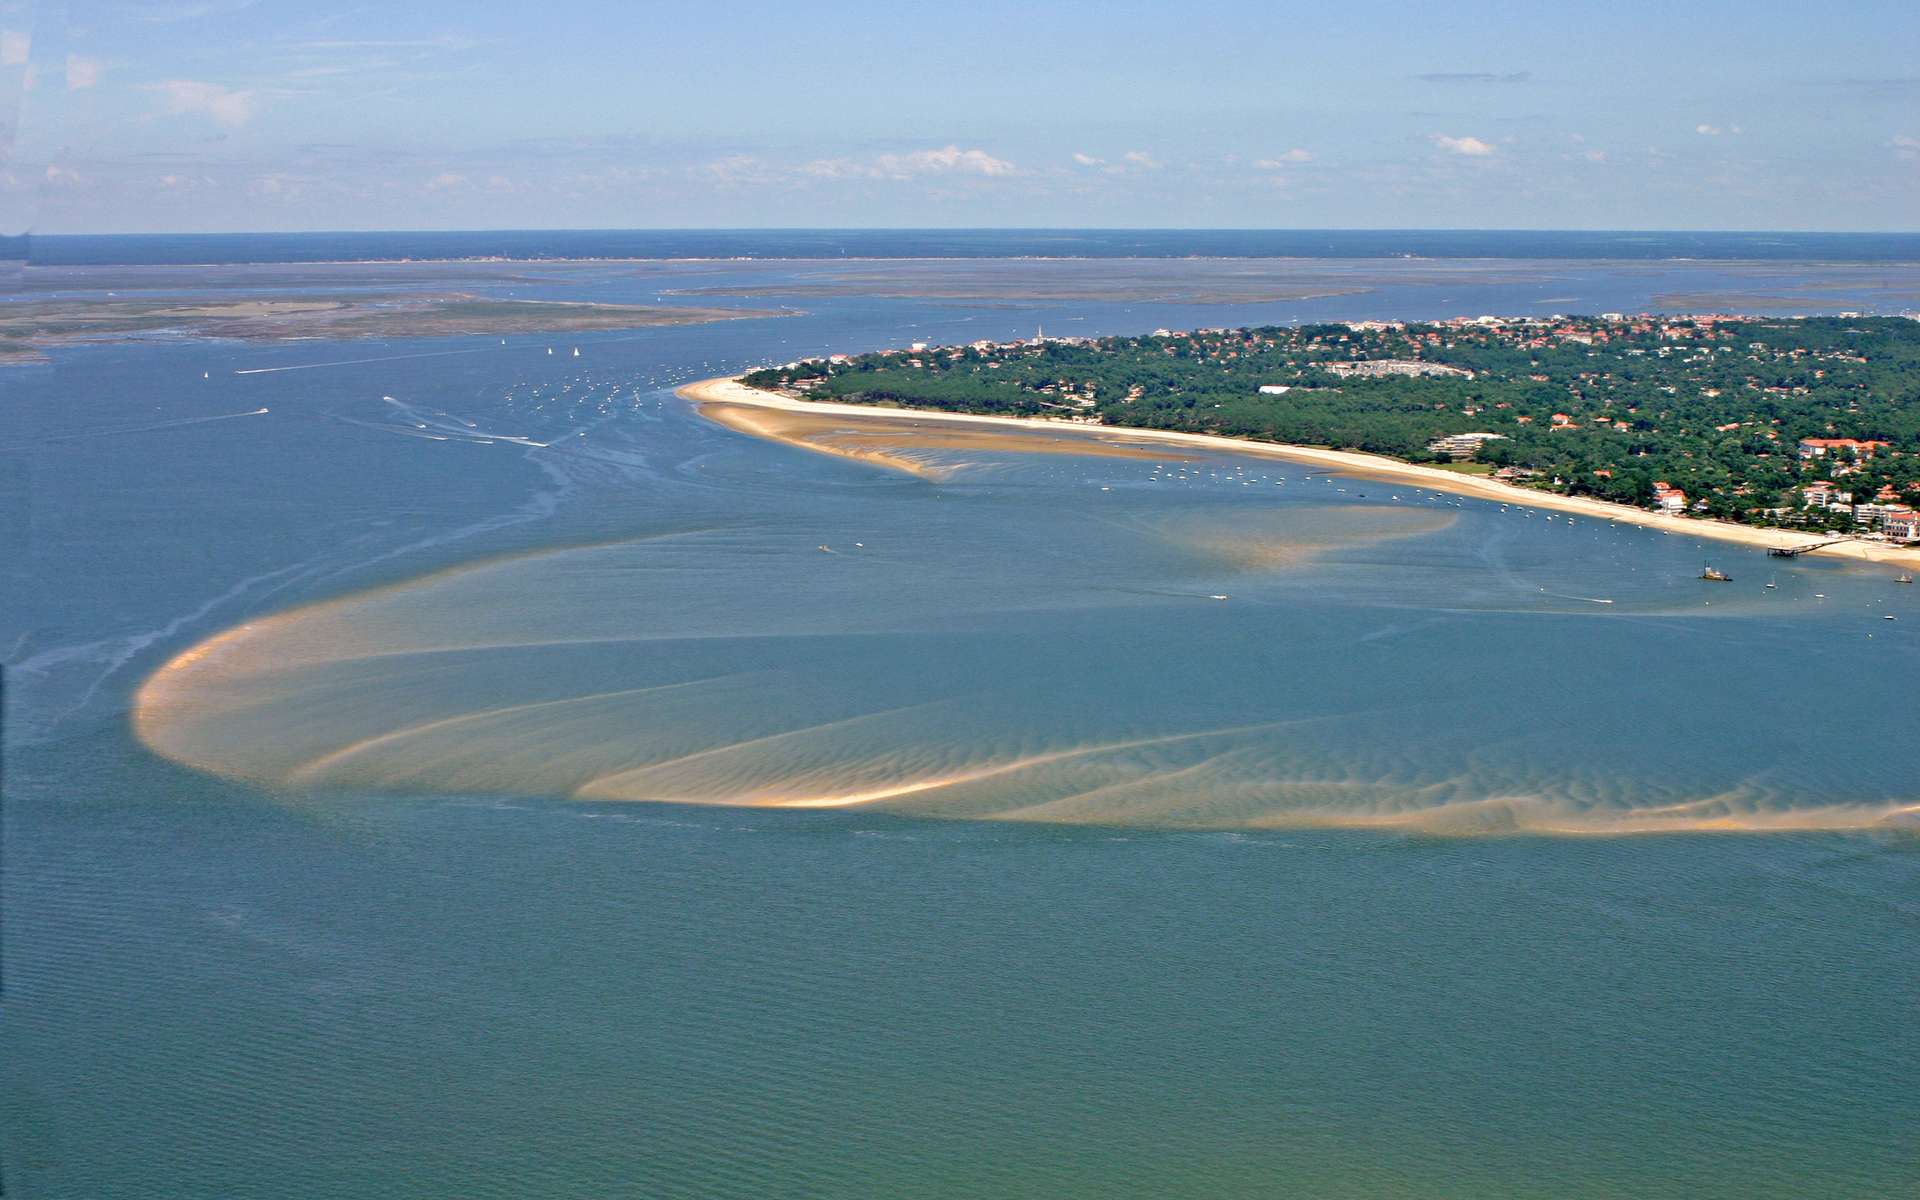 Vue aérienne du bassin d'Arcachon. © guitou33, Adobe Stock